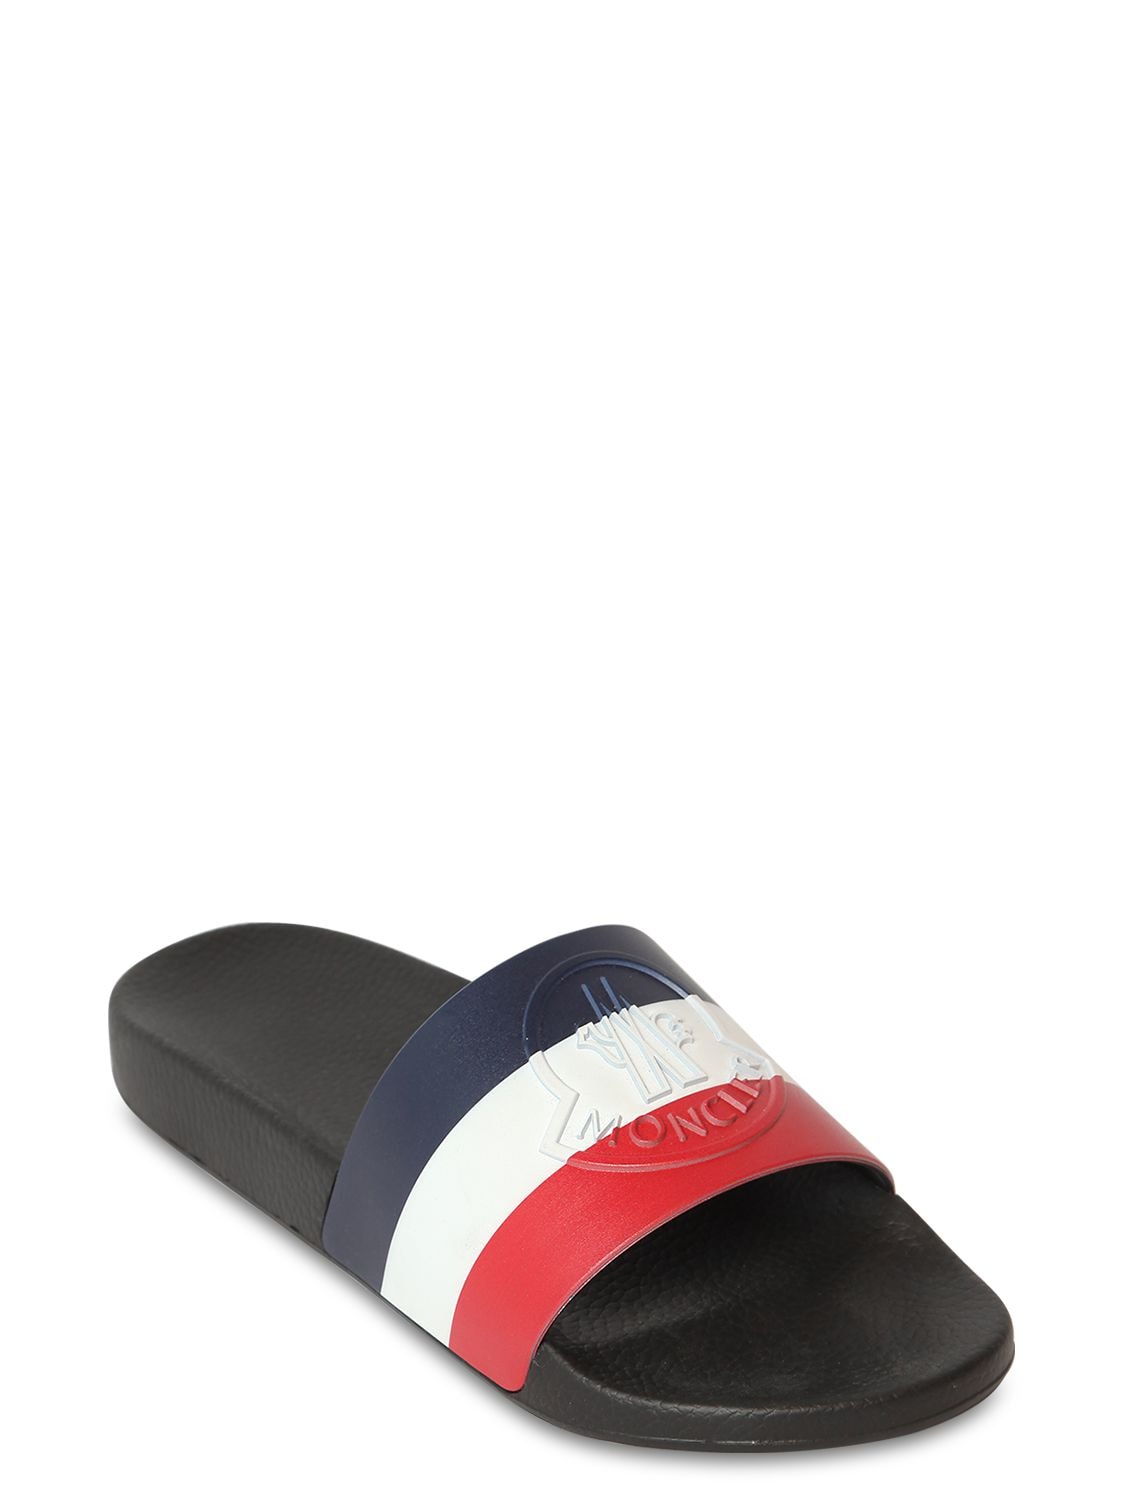 Moncler Basile Rubber Slides Sandals In Black